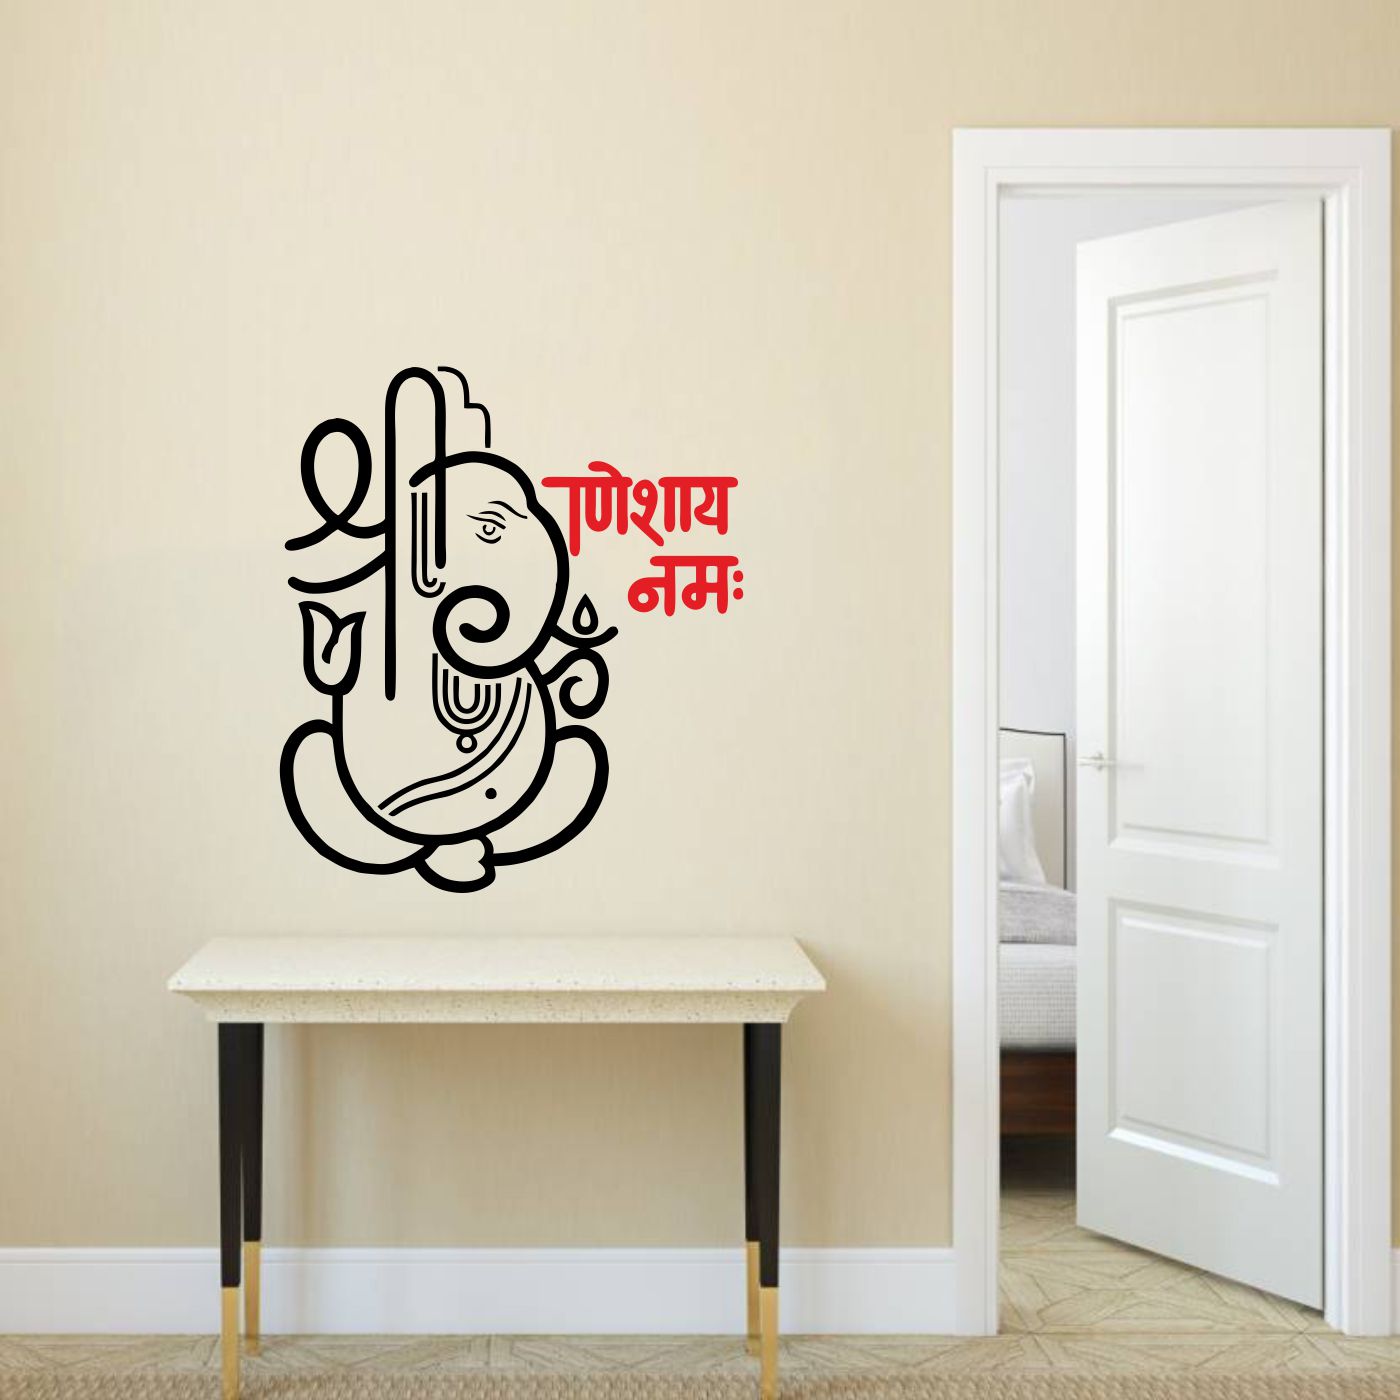 ORKA Lord Ganesha Theme Wall Sticker 7  